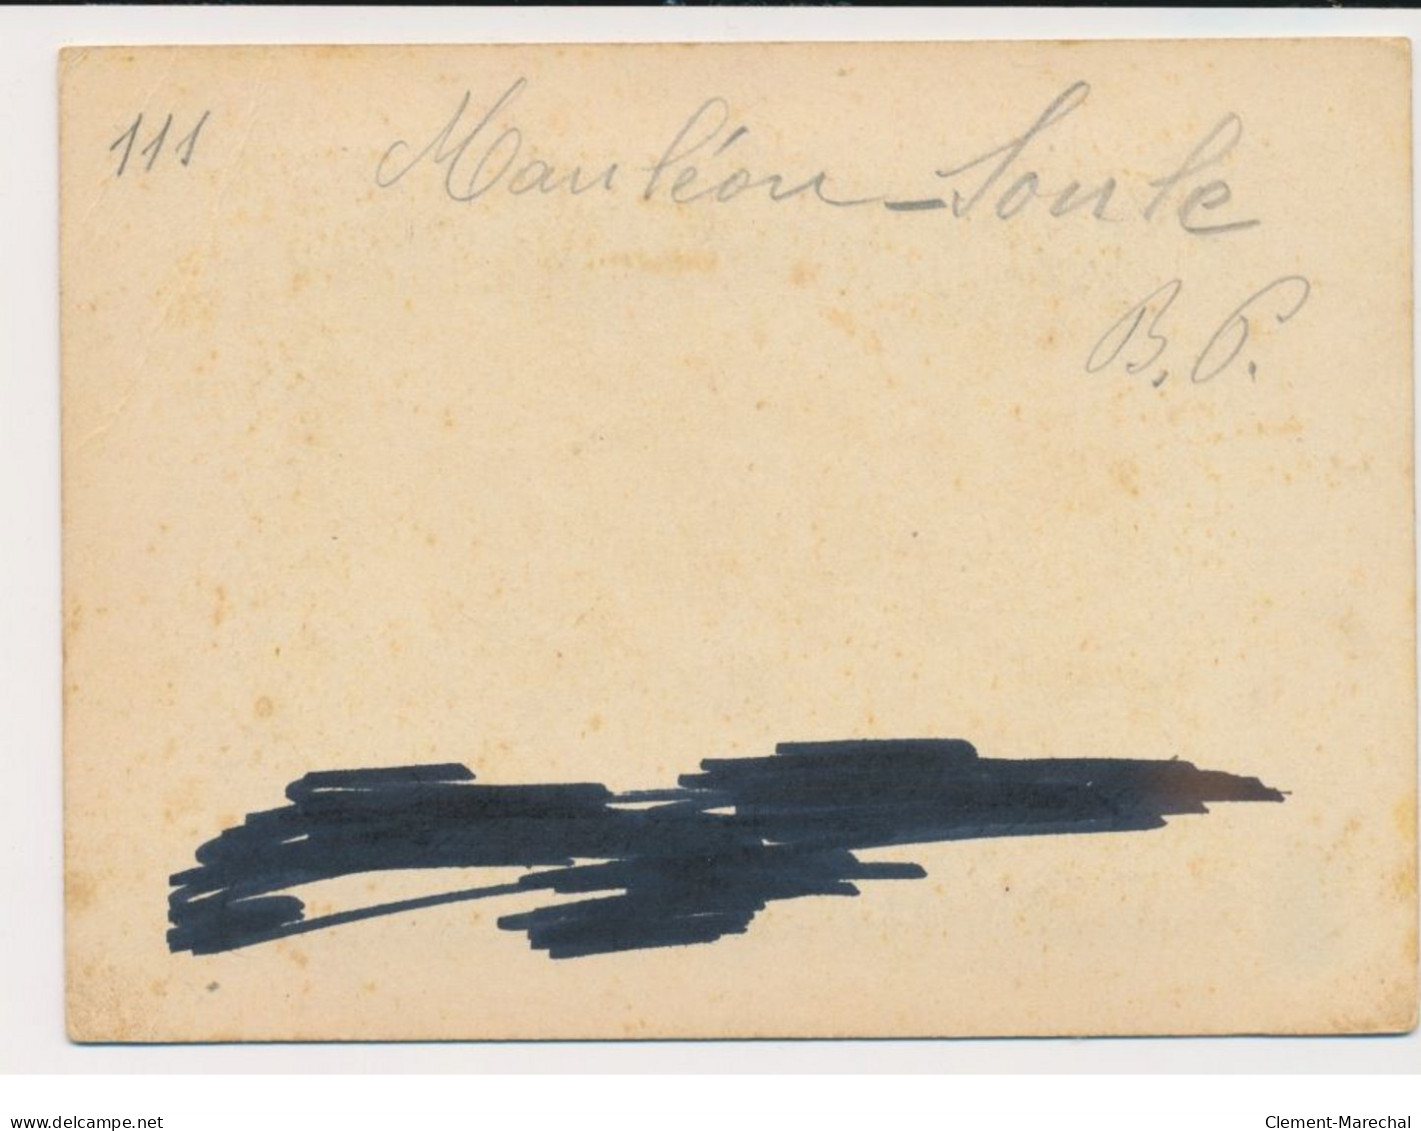 MAULEON (vallée de la Soule) : lot de 4 photos de 1902 (11x15 cm) - types - fenaisons - lavandières - moissons - BE